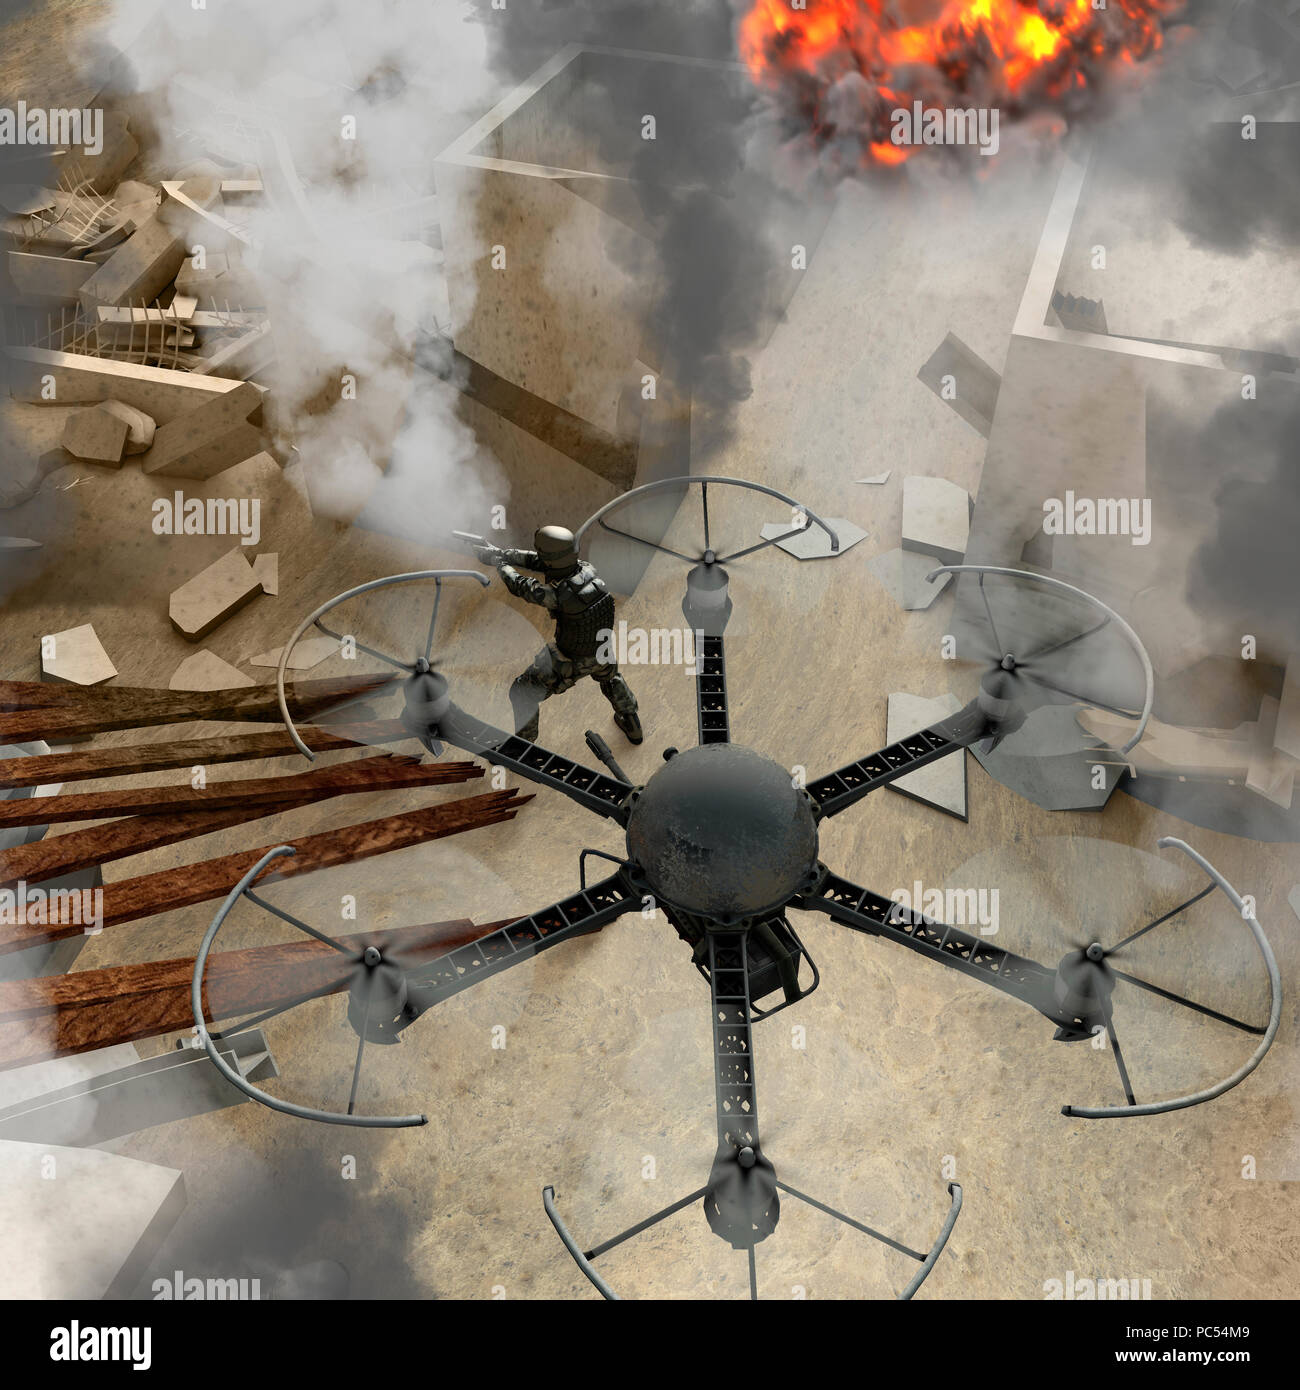 Les nouvelles technologies pour être utilisé dans des opérations militaires. Les drones de guerre. Débris, zone de guerre avec des soldats, des bâtiments, de l'explosif, le terrorisme Banque D'Images